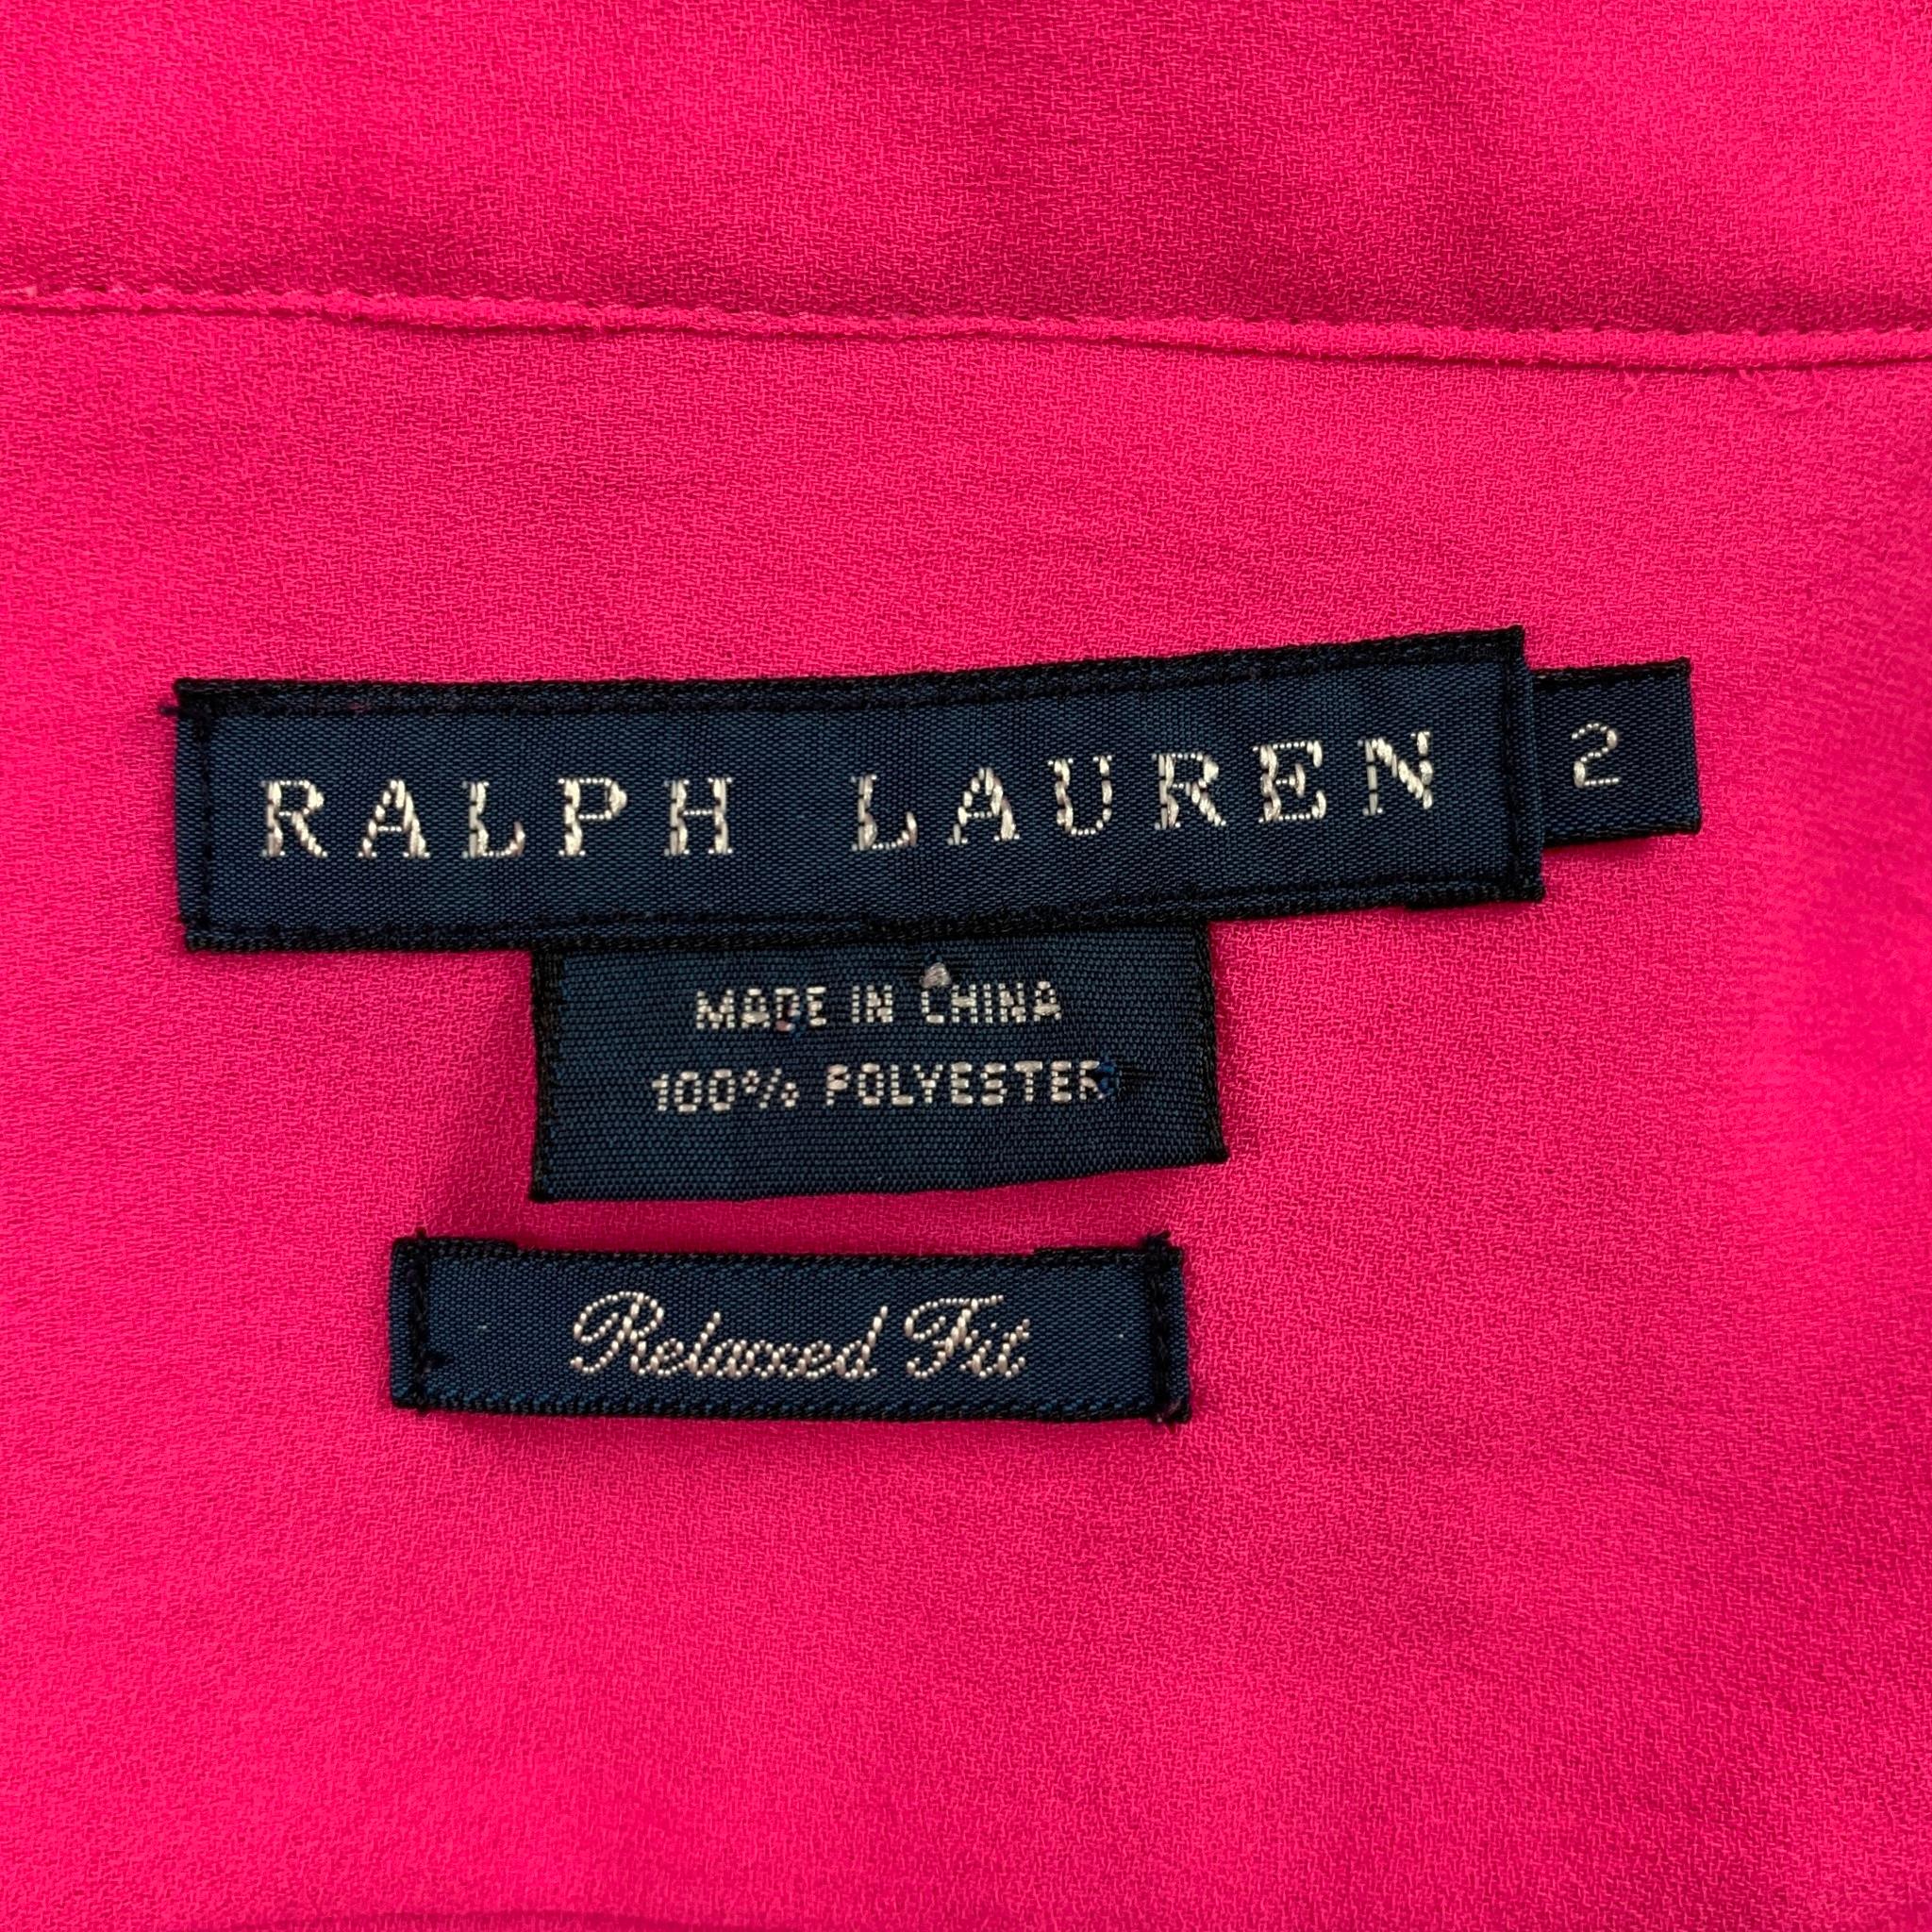 ralph lauren pink linen shirt